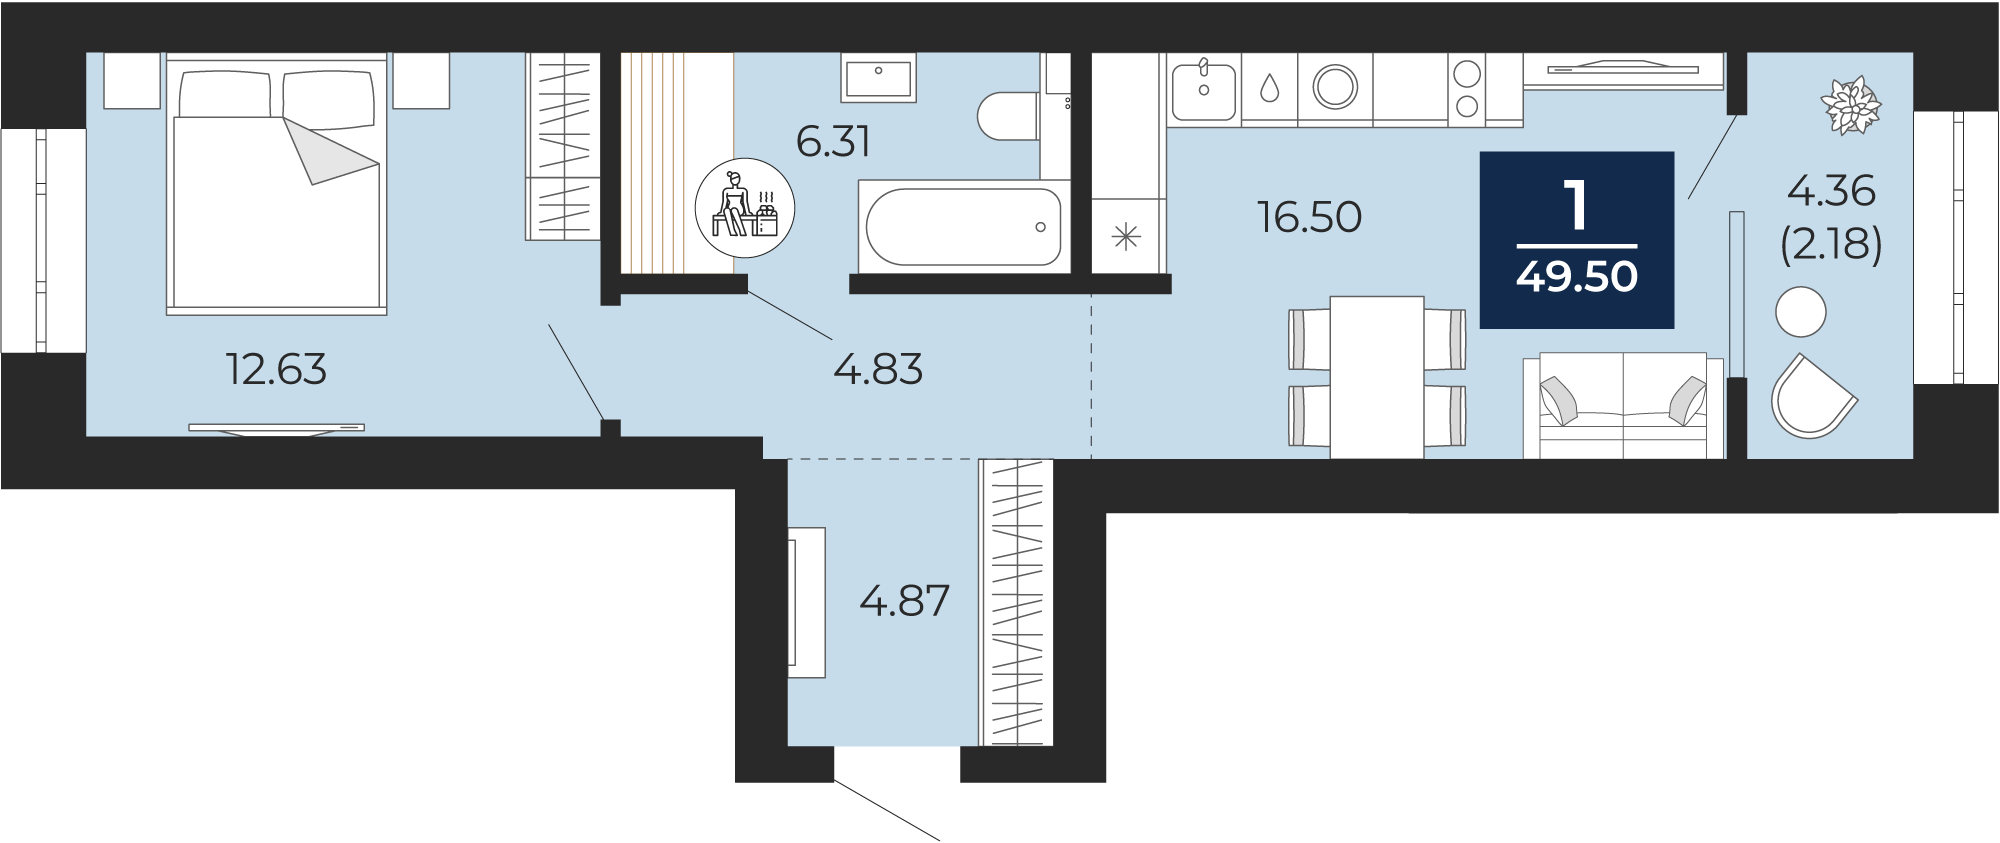 Квартира № 157, 1-комнатная, 49.5 кв. м, 6 этаж